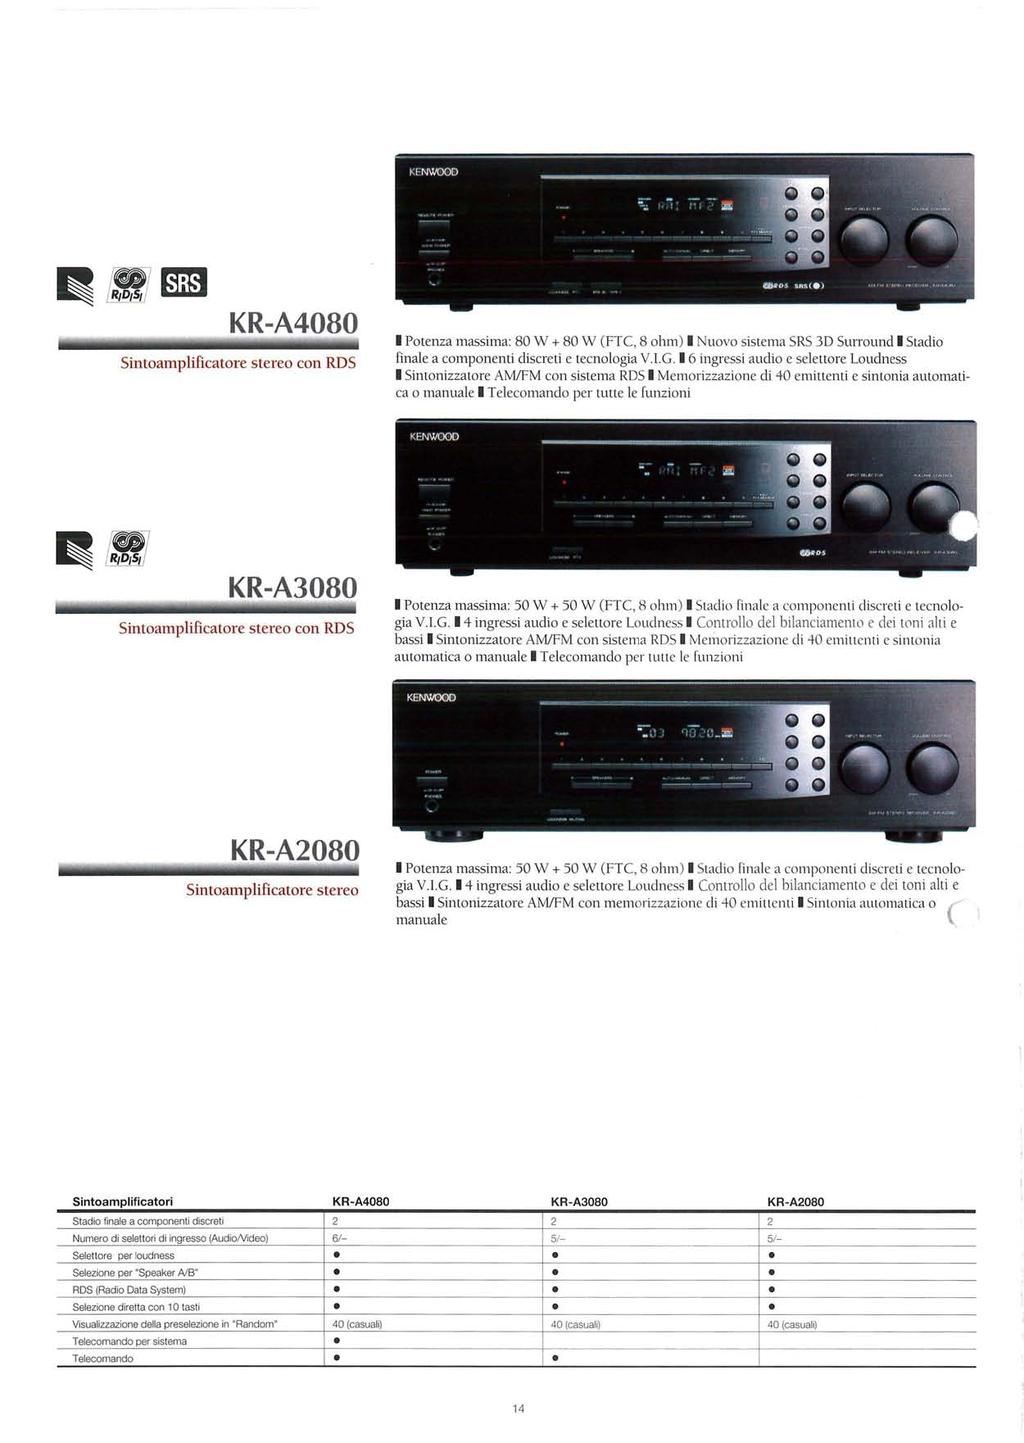 Sintoamplificatore KR-A4080 stereo con RDS I Potenza massima: 80 W + 80 W (FTC, 8 ohm) I Nuovo sistema SRS 3D Surround I Stadio finale a componenti discreti e tecnologia V.I.G.